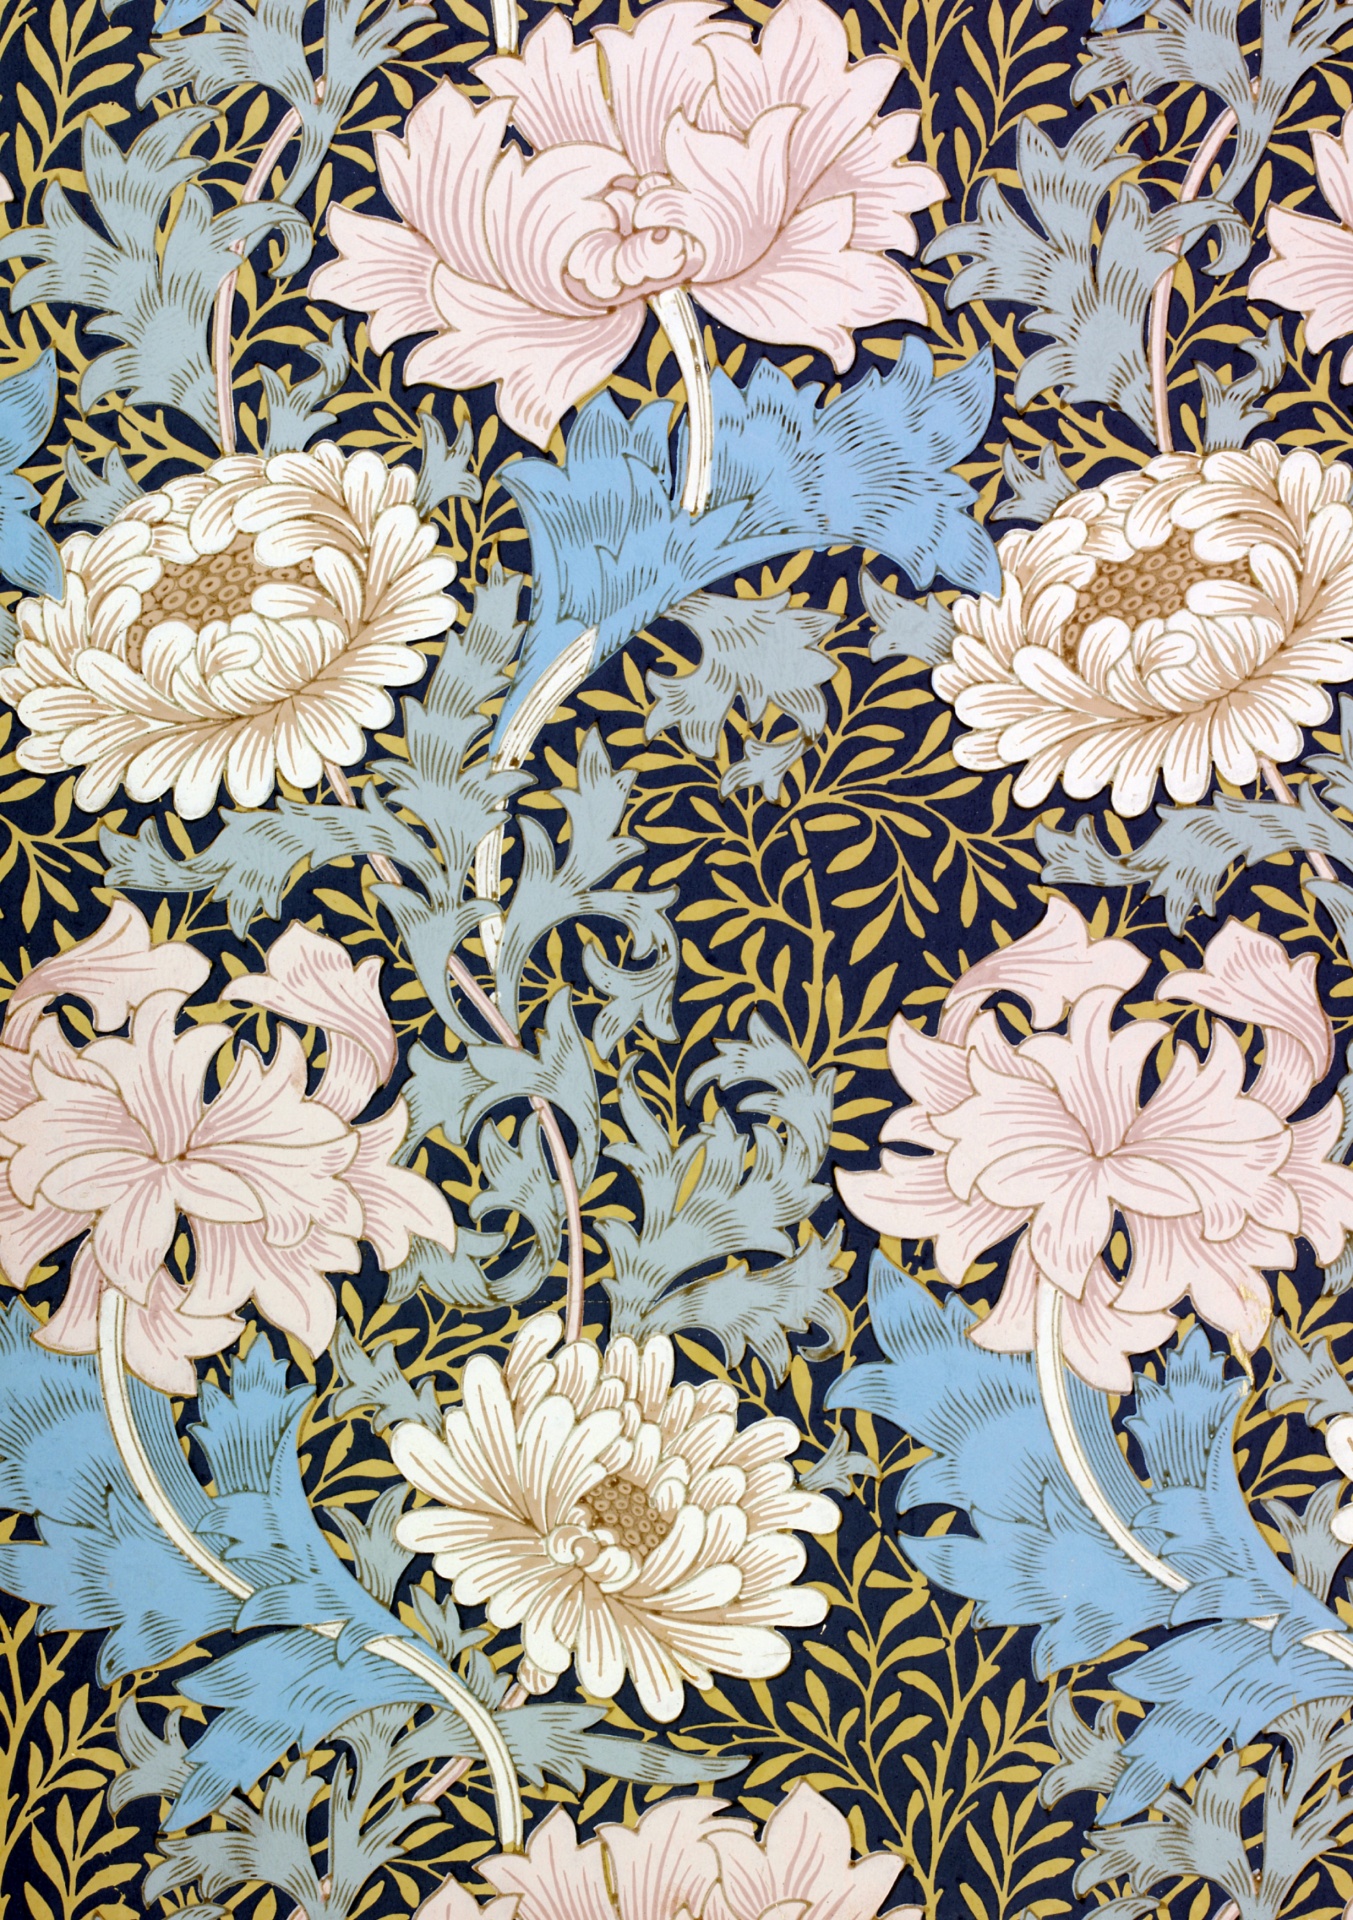 Vintage floral art pattern retro illustration background ornamental